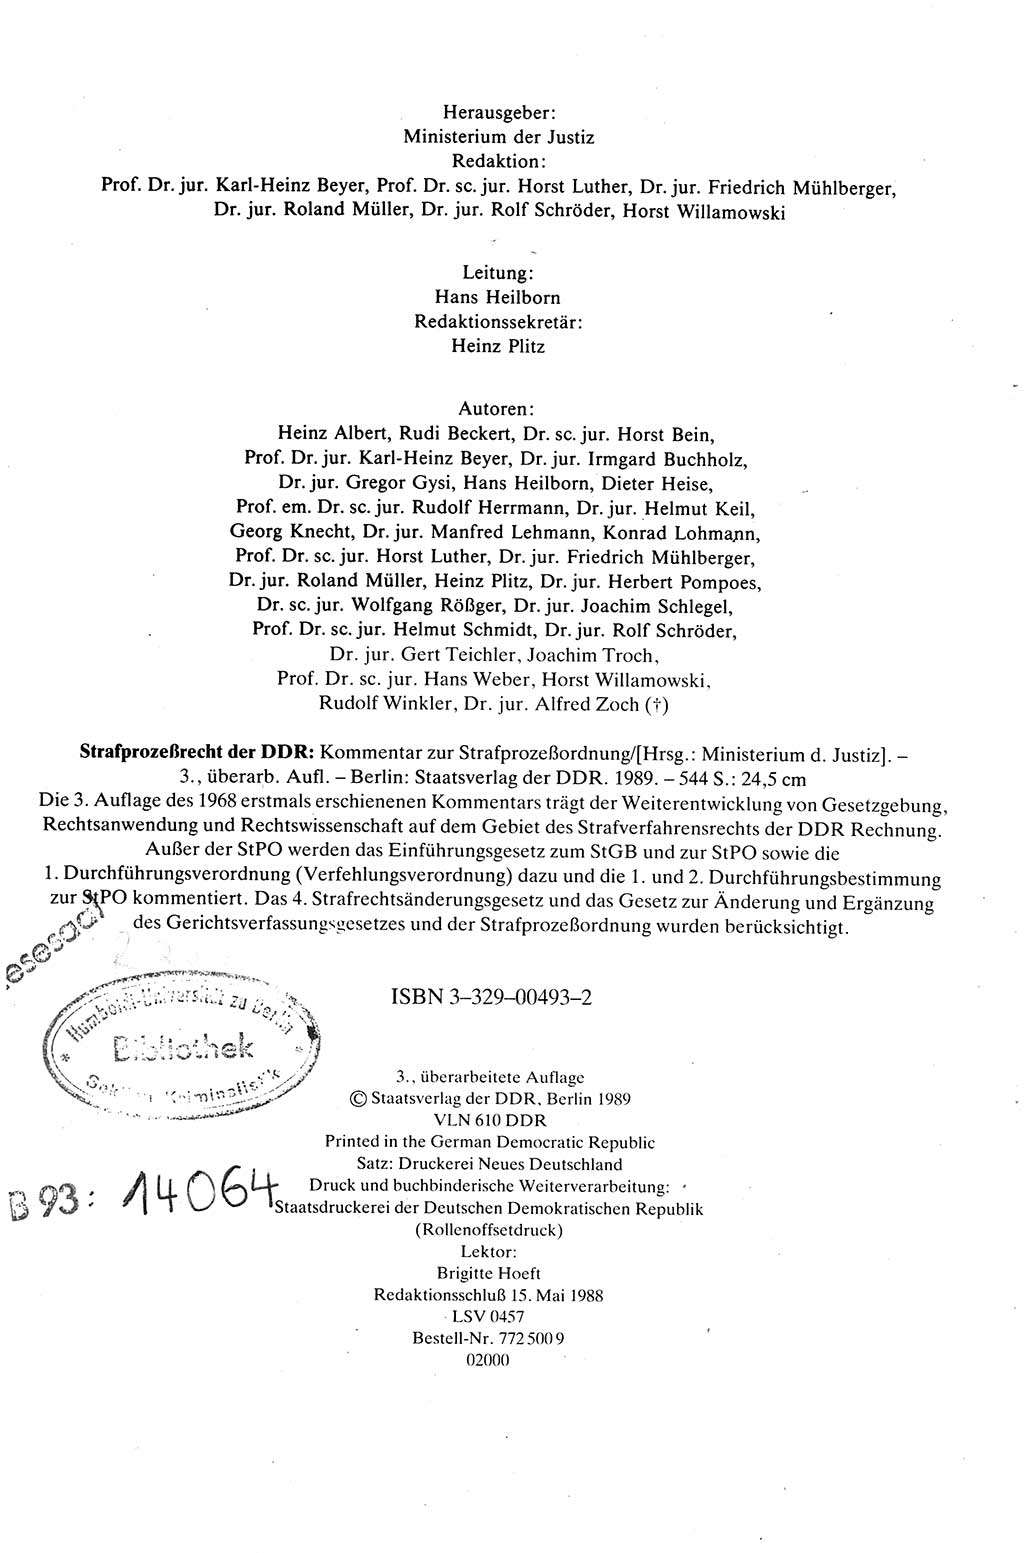 Strafprozeßrecht der DDR (Deutsche Demokratische Republik), Kommentar zur Strafprozeßordnung (StPO) 1989, Seite 4 (Strafprozeßr. DDR Komm. StPO 1989, S. 4)